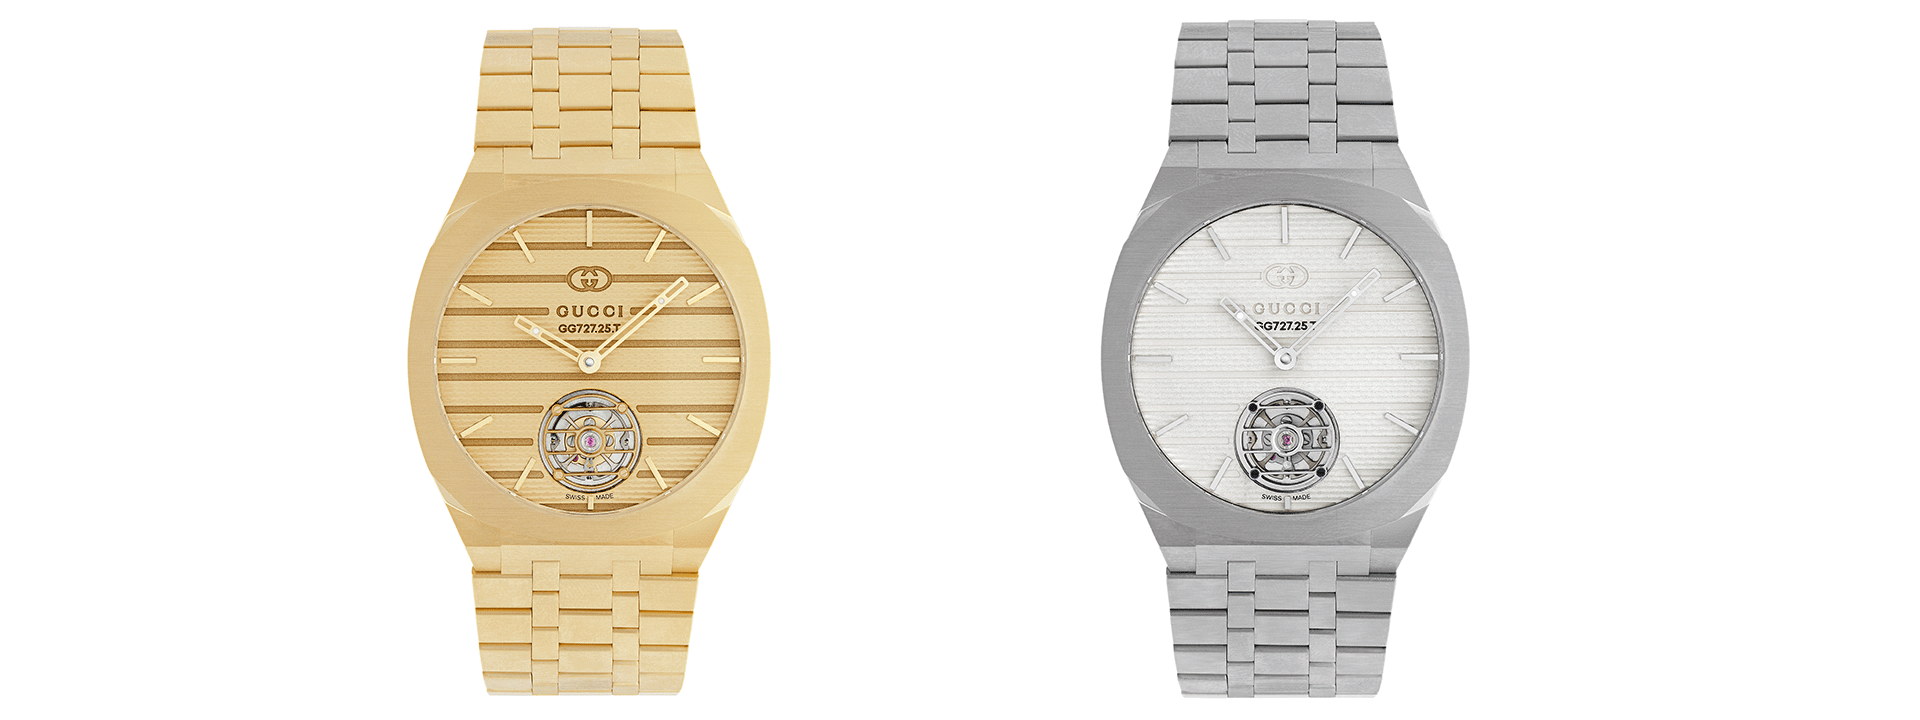 No momento você está vendo Coleção Gucci de alta relojoaria, um marco anunciado pela introdução do ultrafino GUCCI 25H.